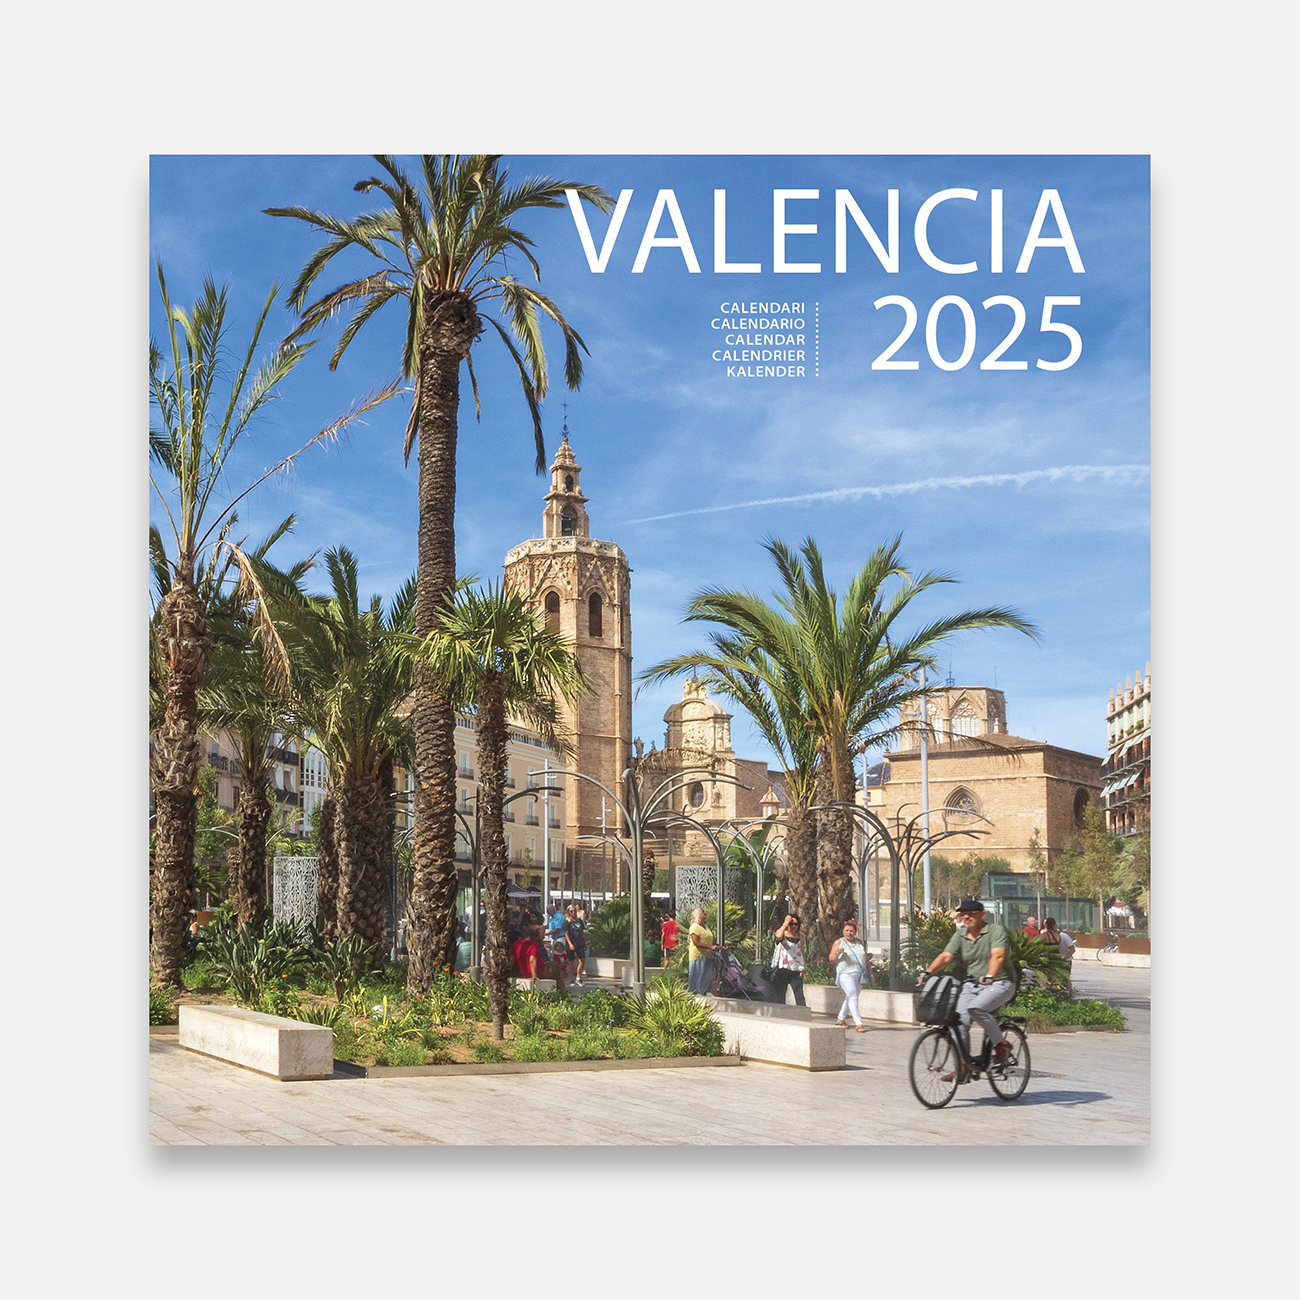 Calendari 2025 València 25val calendario pared 2025 valencia